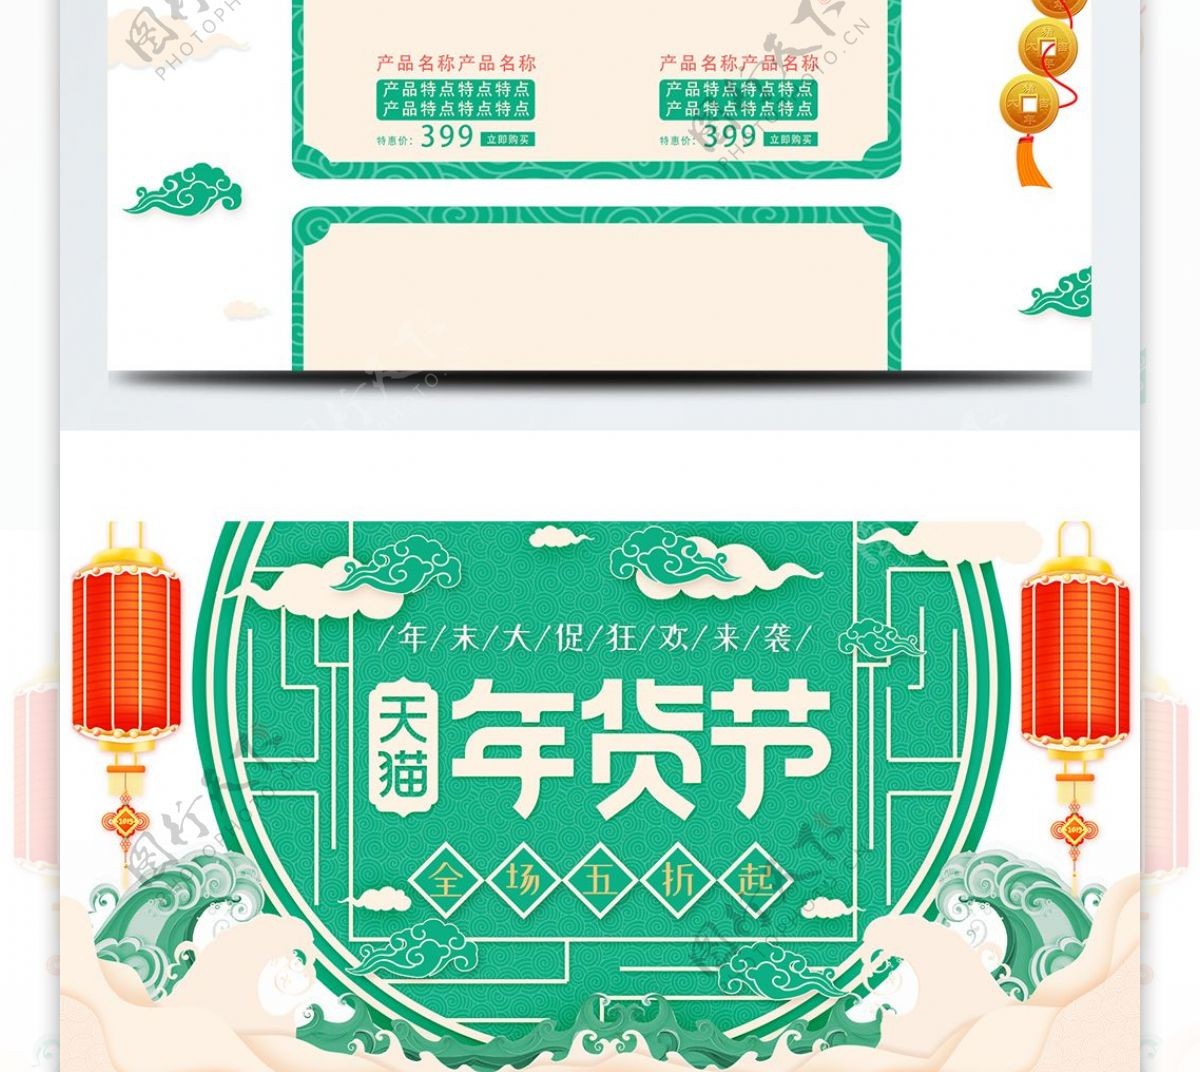 2019绿色清新中国风天猫年货节首页模板